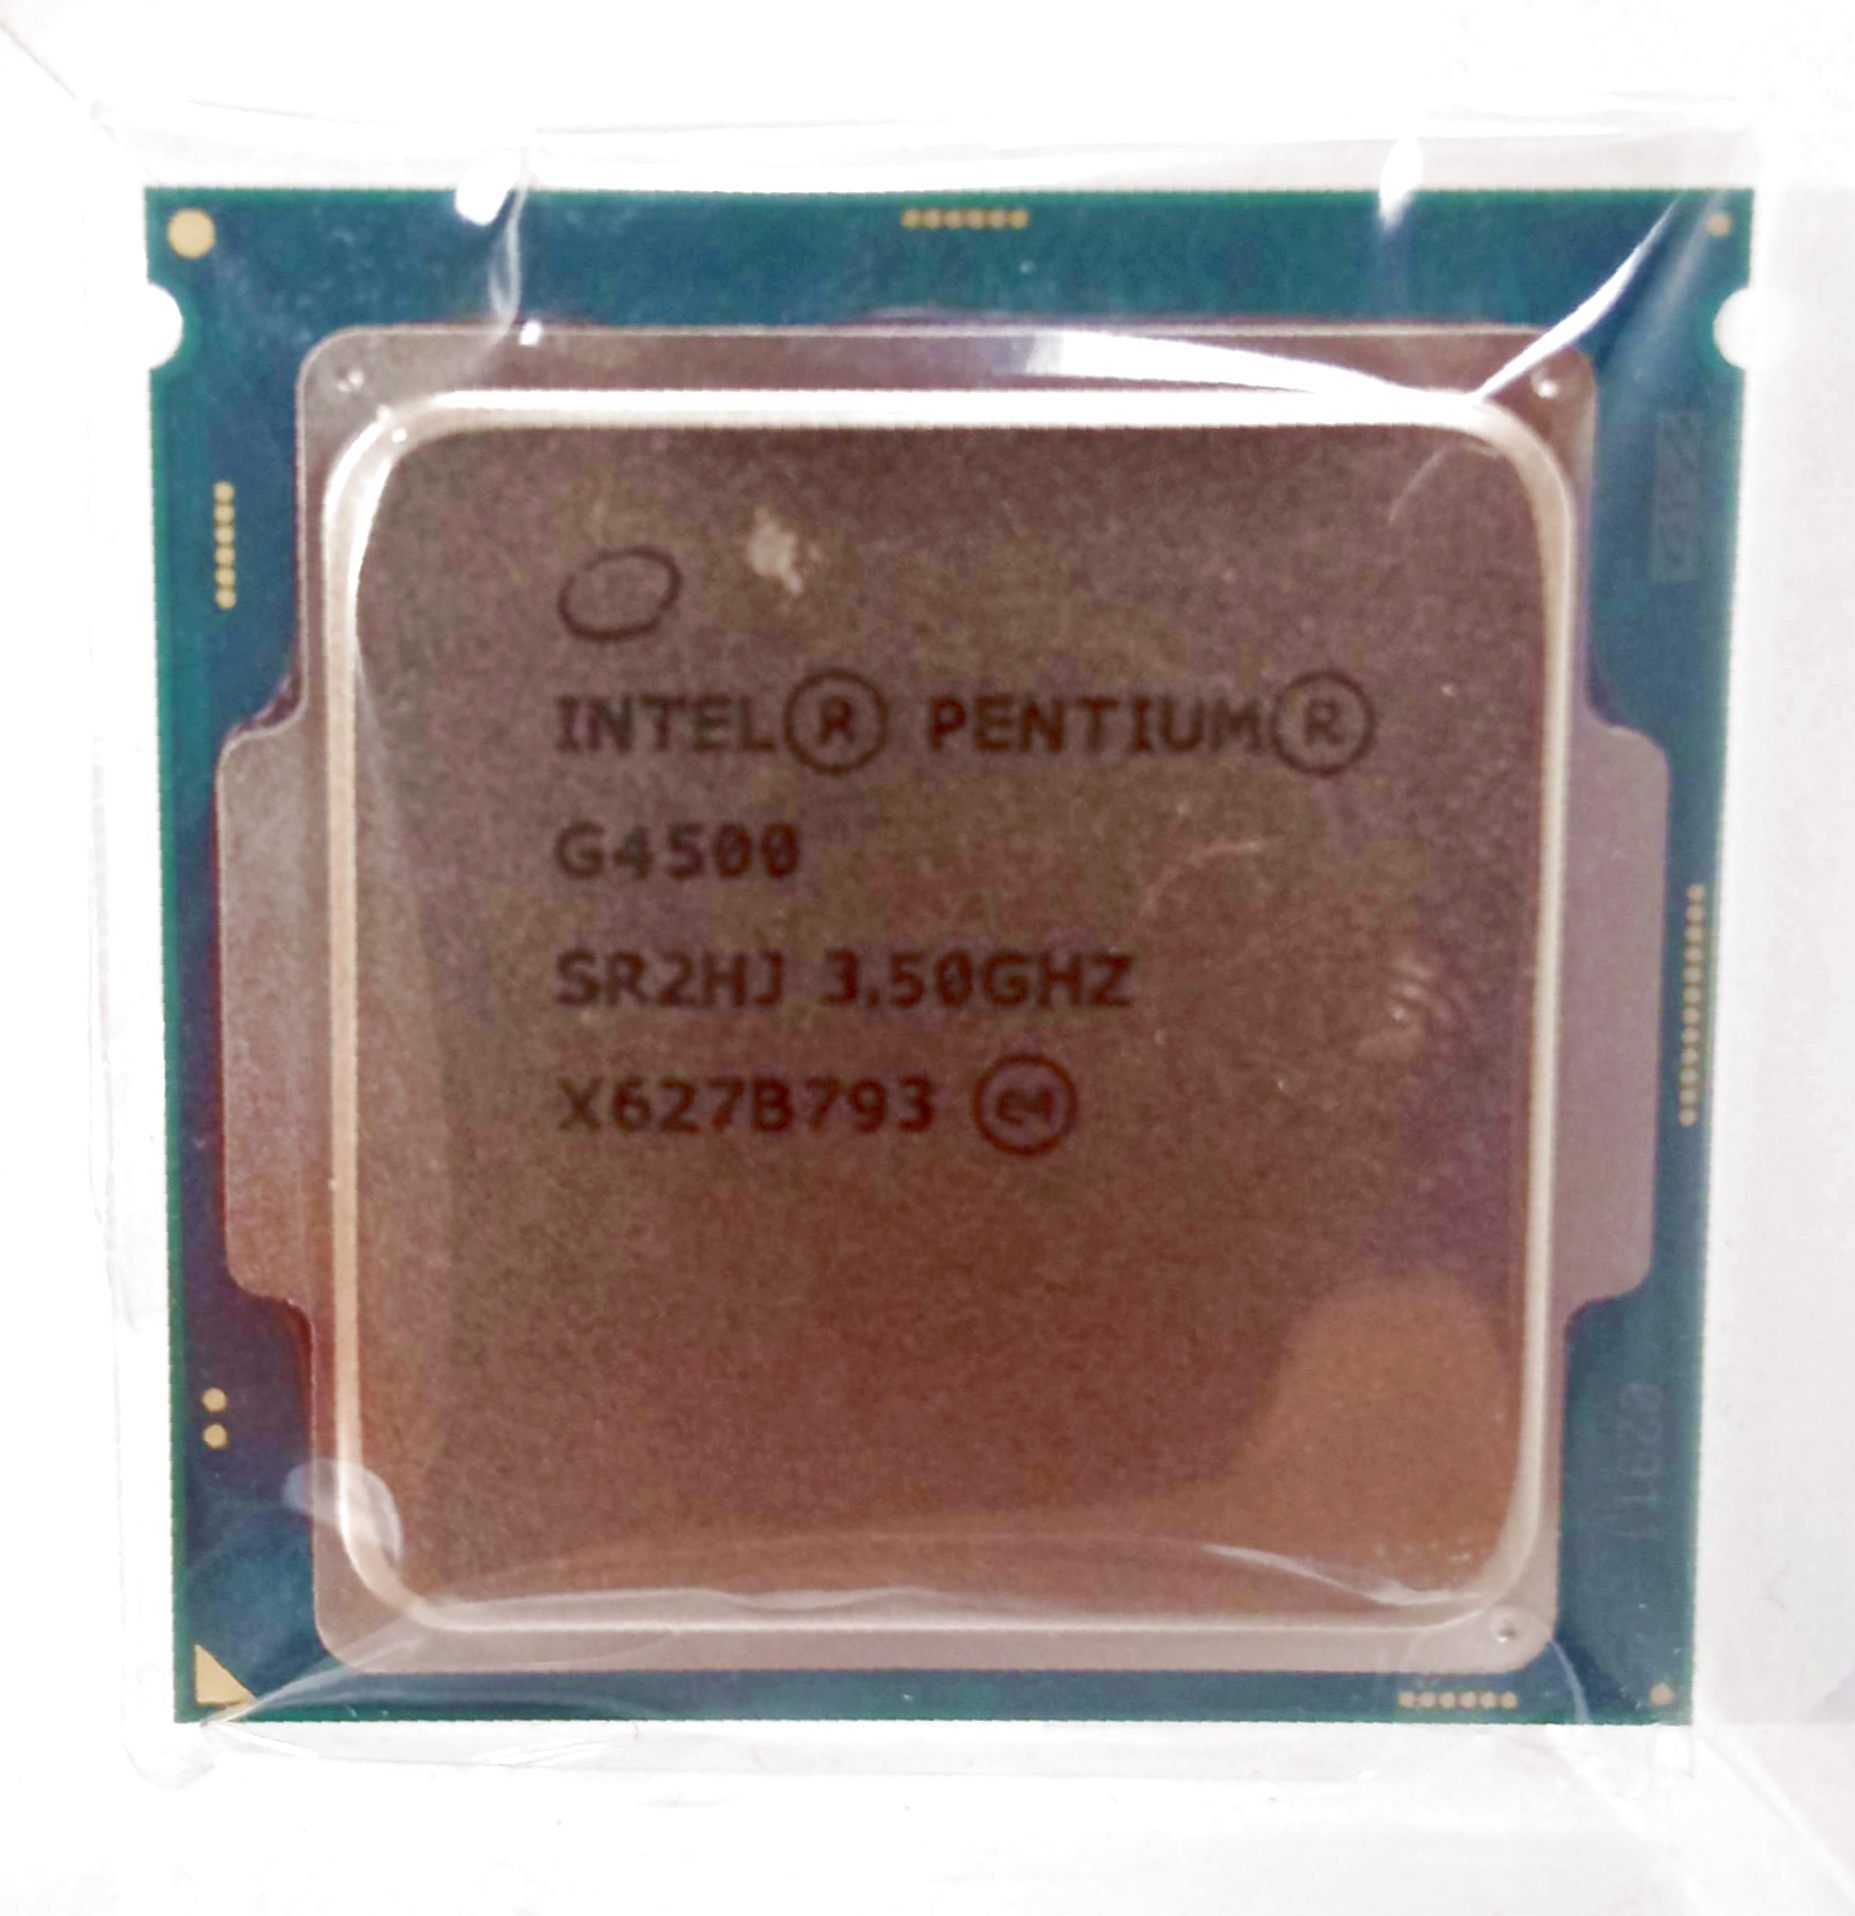 Pentium gold характеристики. Intel Pentium Gold 7505. Pentium g4500. Pentium Gold 7505 сокет. Pentium модель процессора 7505.